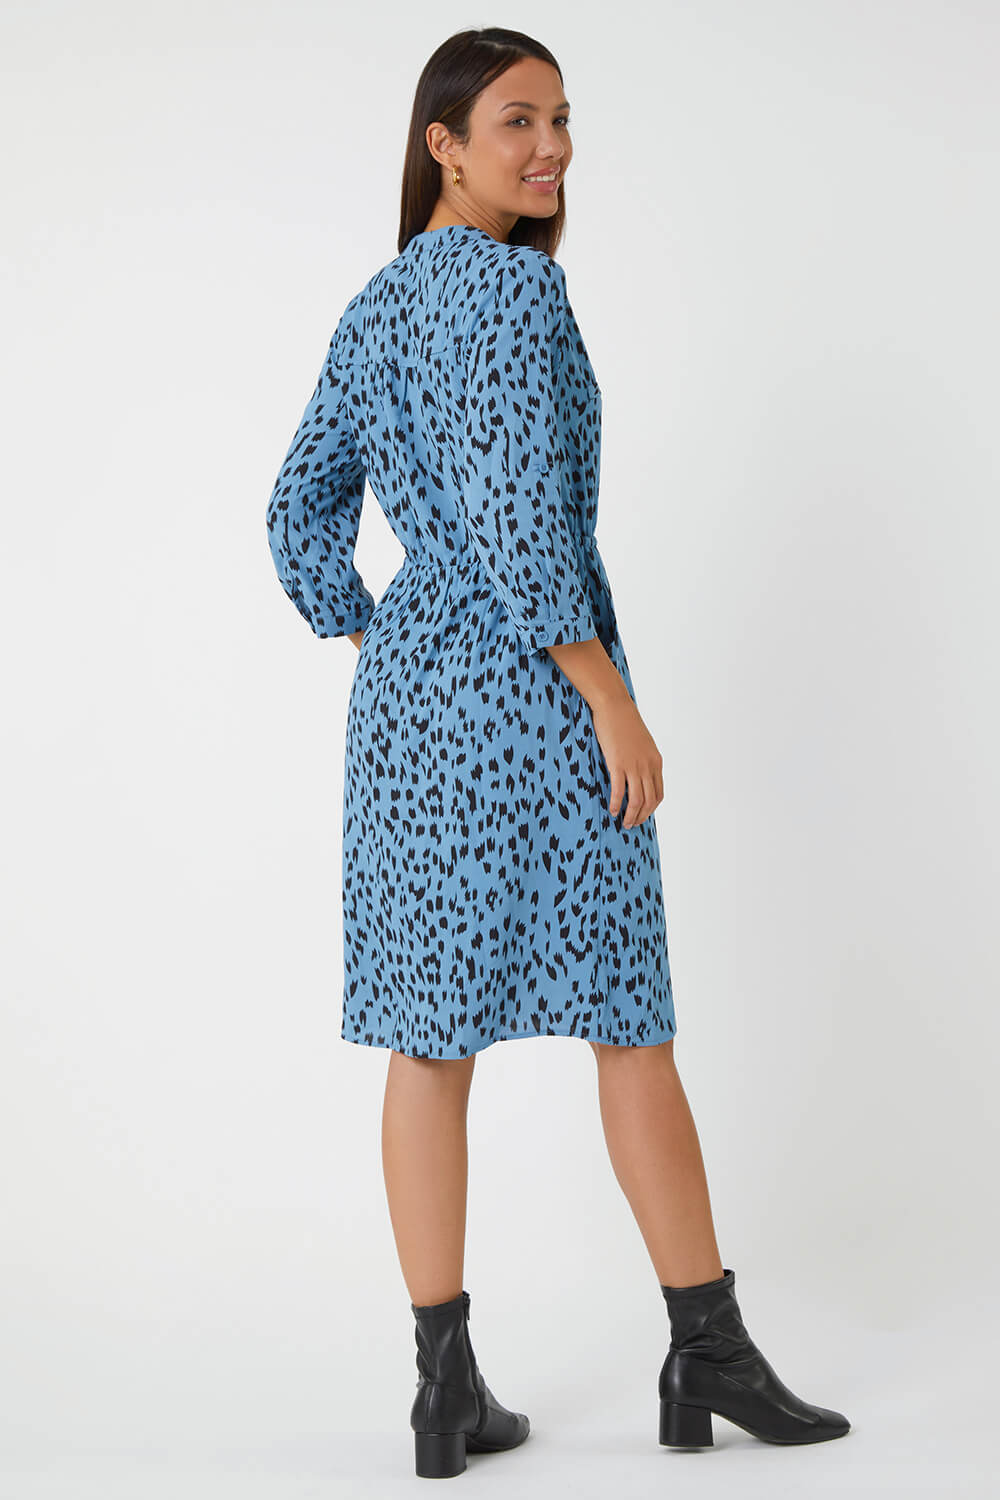 Blue Animal Print Zip Detail Shirt Dress, Image 3 of 5